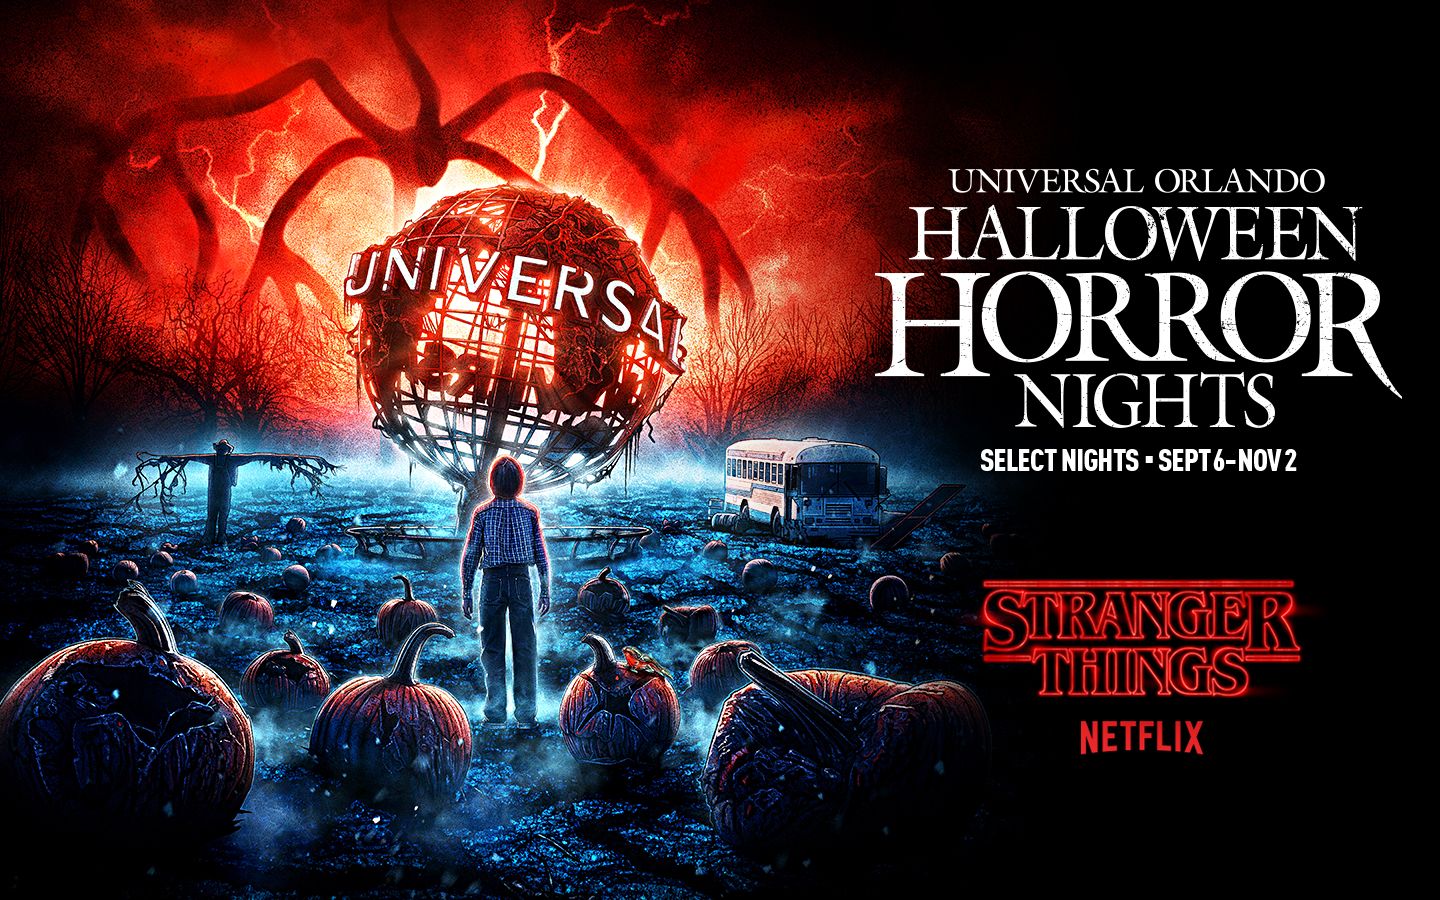 Netflix's Stranger Things Returns to Universal's Halloween Horror